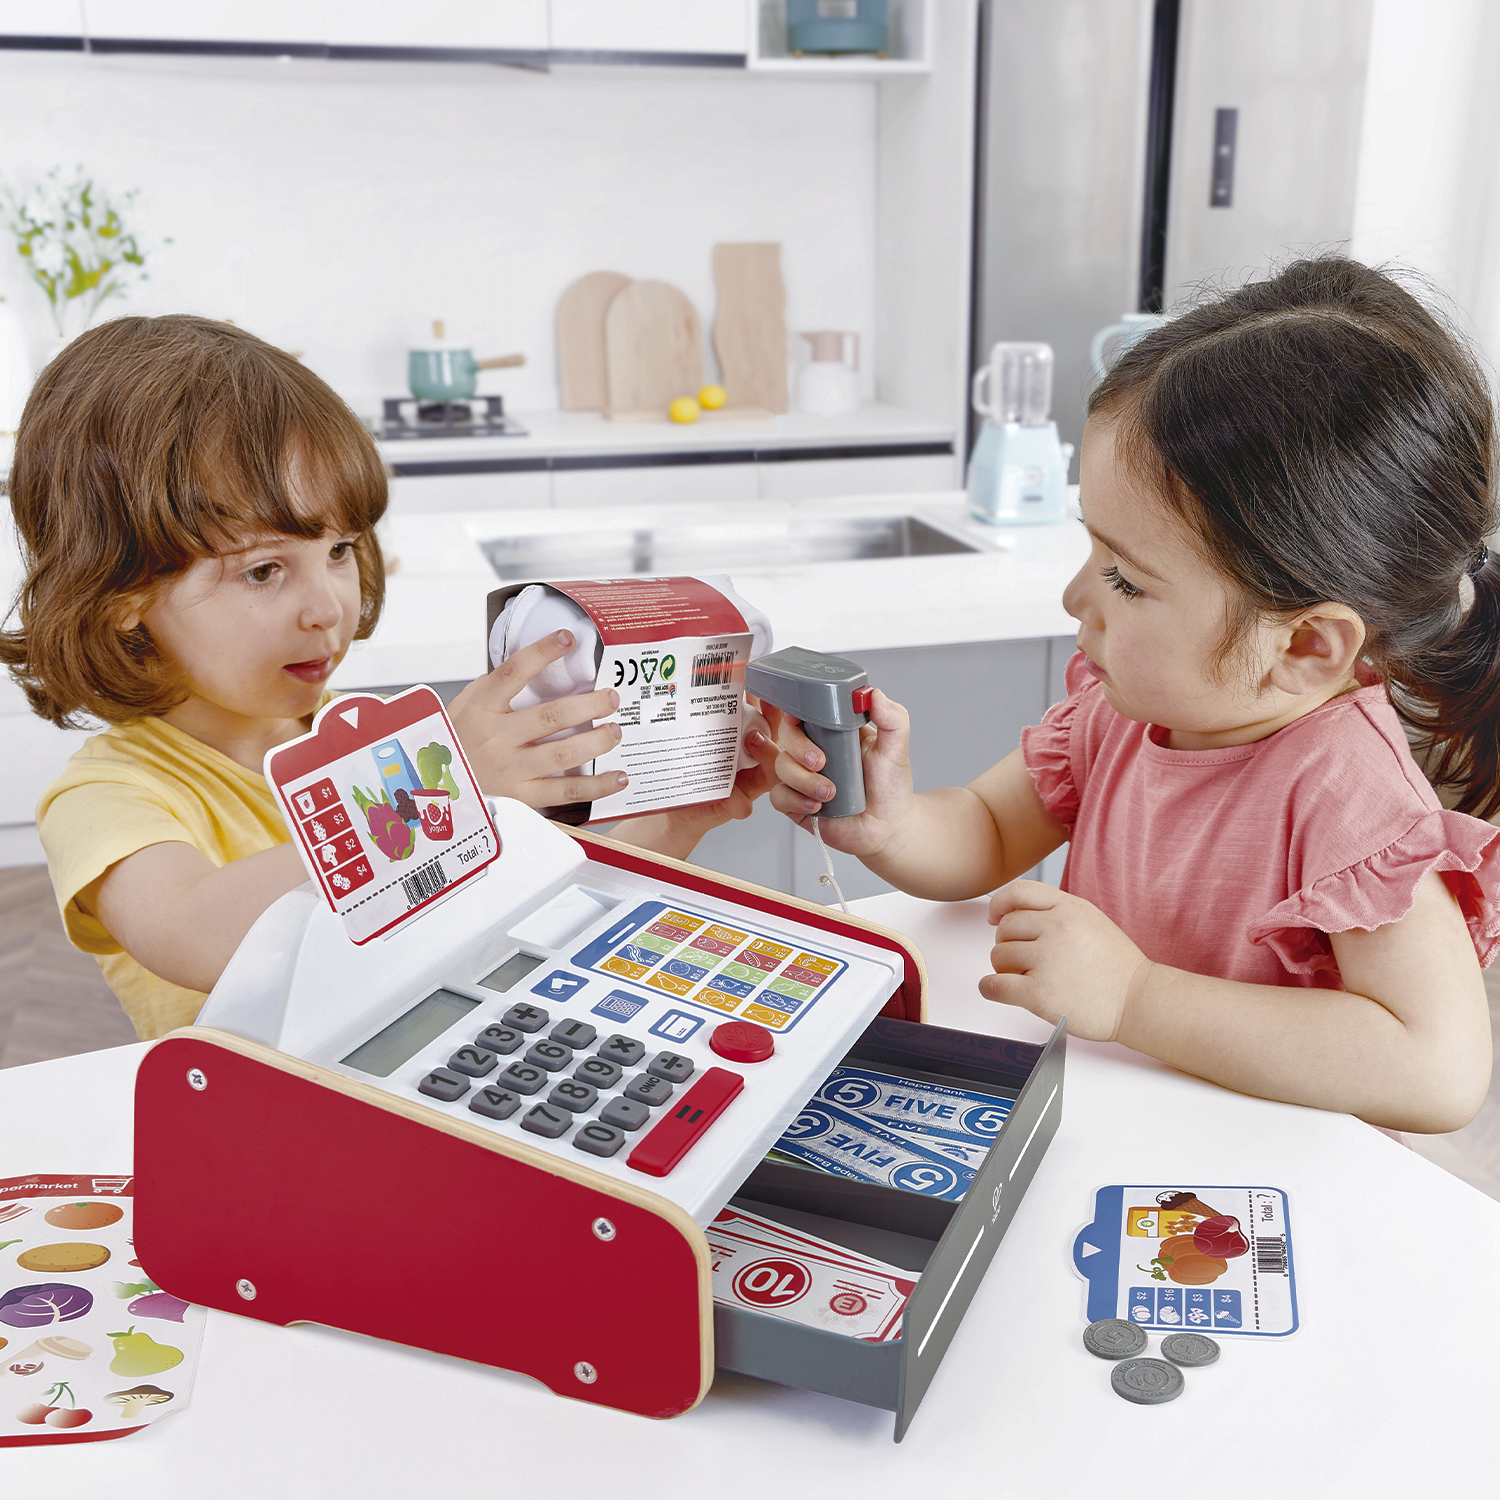 Детская игрушечная деревянная касса Hape, с калькулятором, светом и звуком E3184_HP hape деревянная касса с набором наклеек и калькулятором